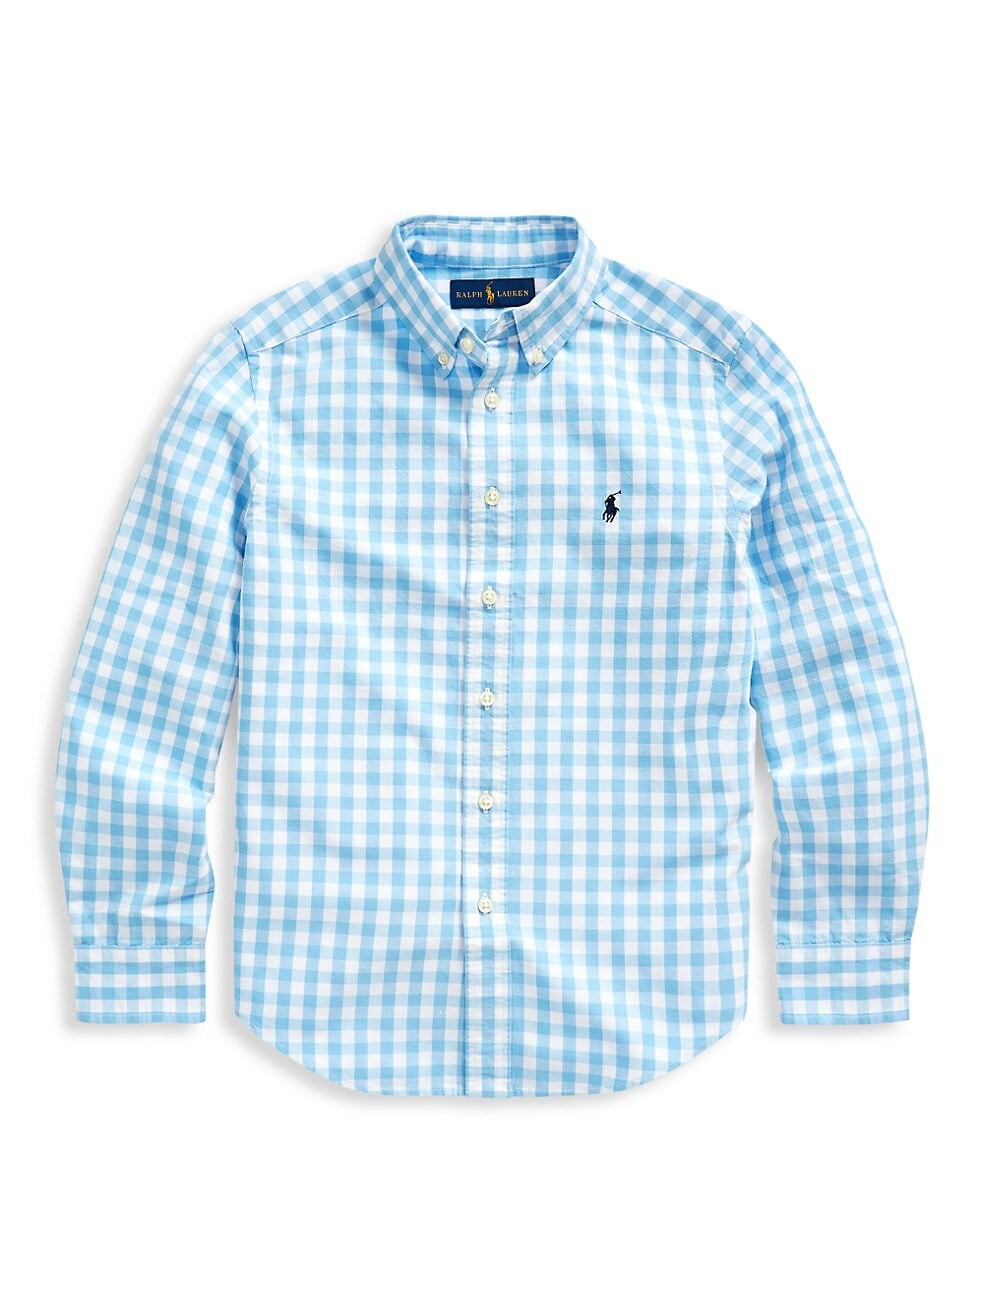 Ralph Lauren BLUE LAGOON Boy's Cotton-Blend Gingham Button-Down Shirt, US 4T